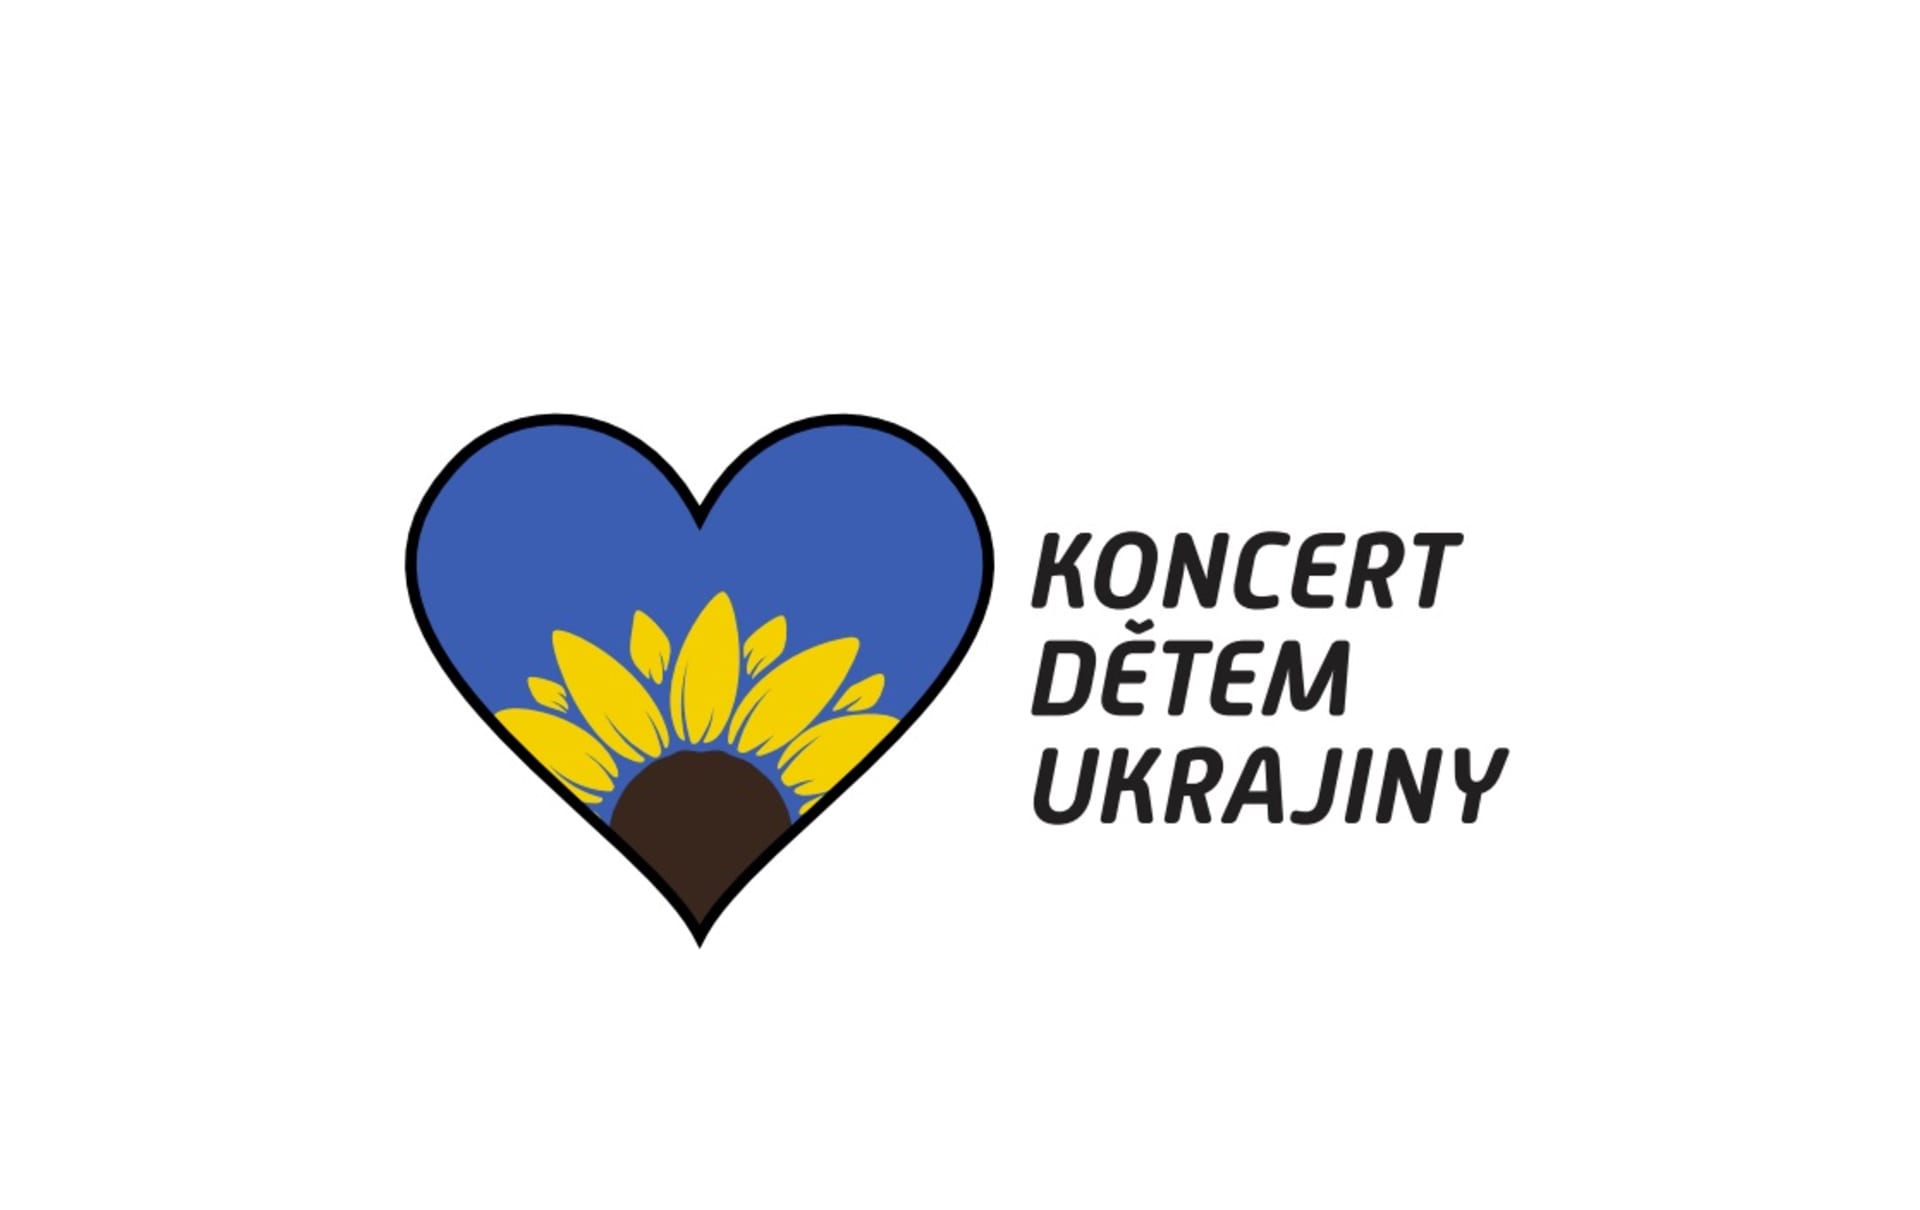 Koncert dětem Ukrajiny